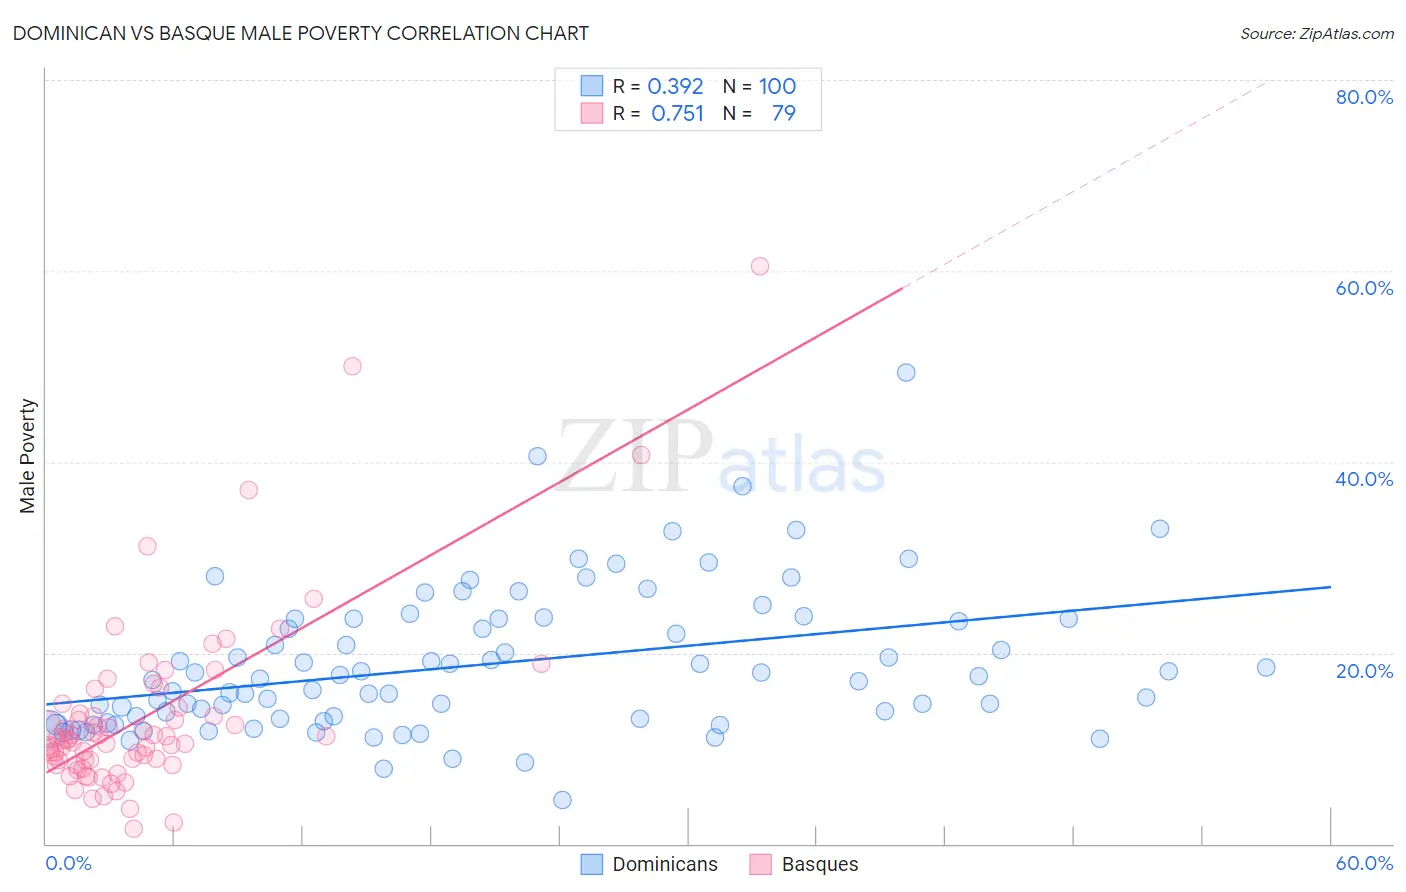 Dominican vs Basque Male Poverty